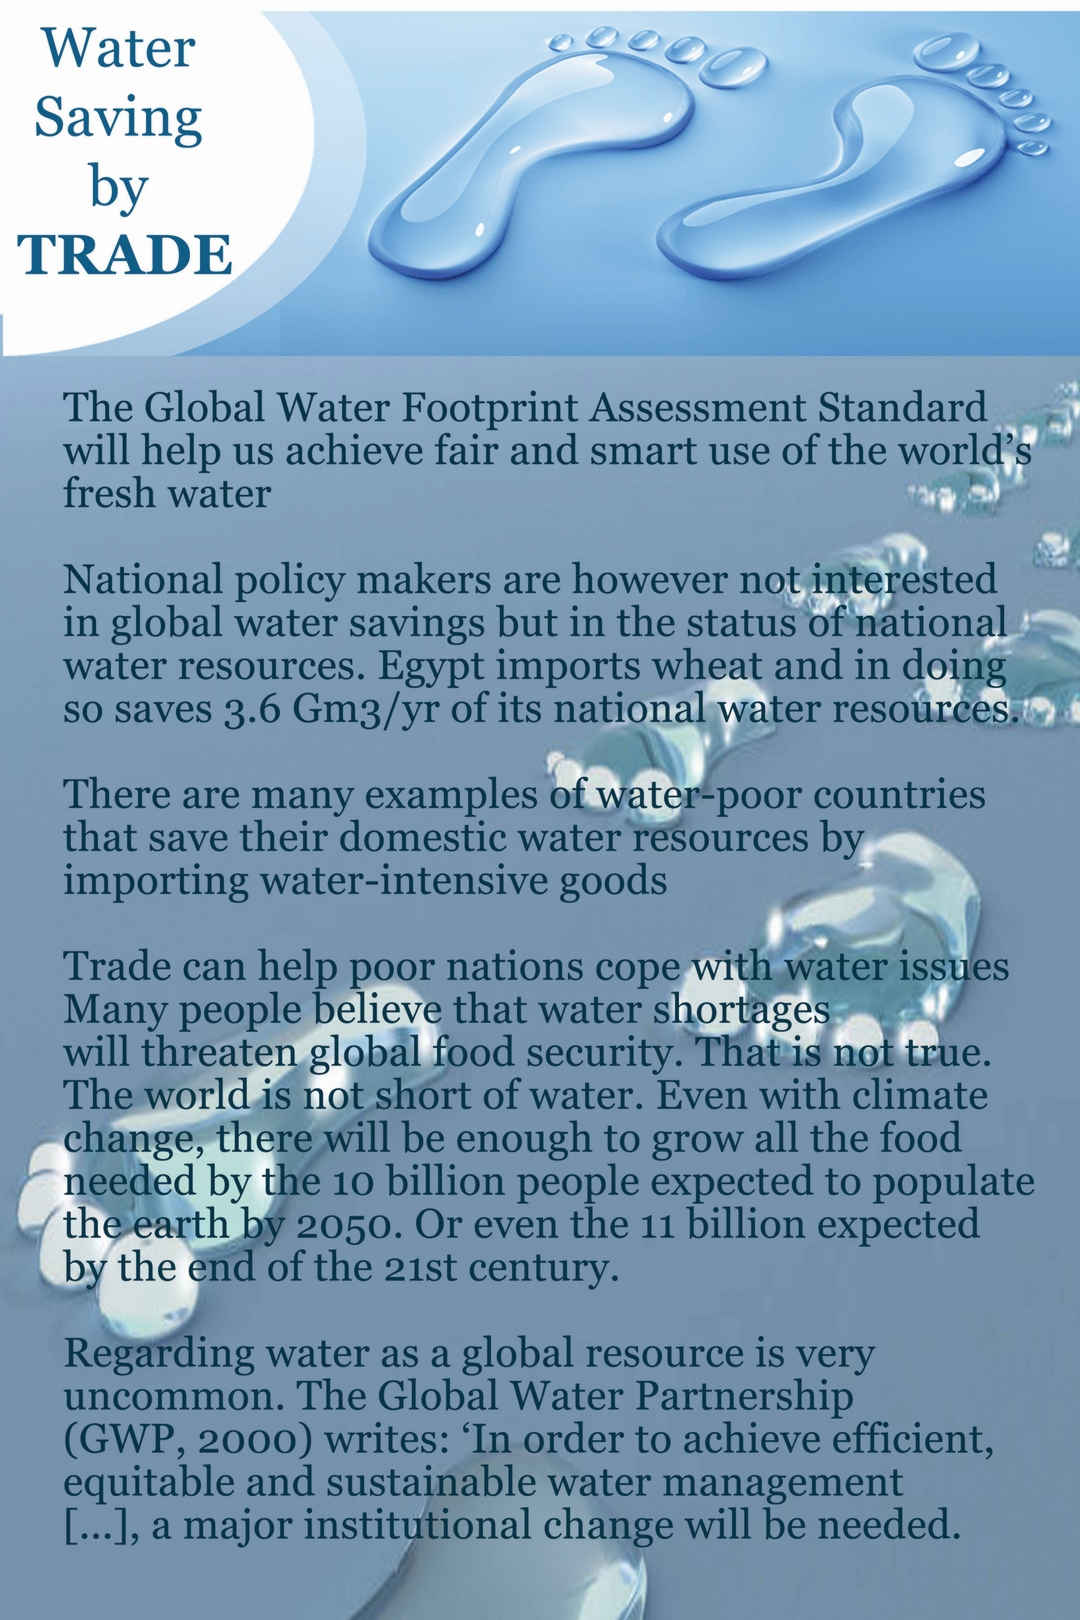 Water saving by trade